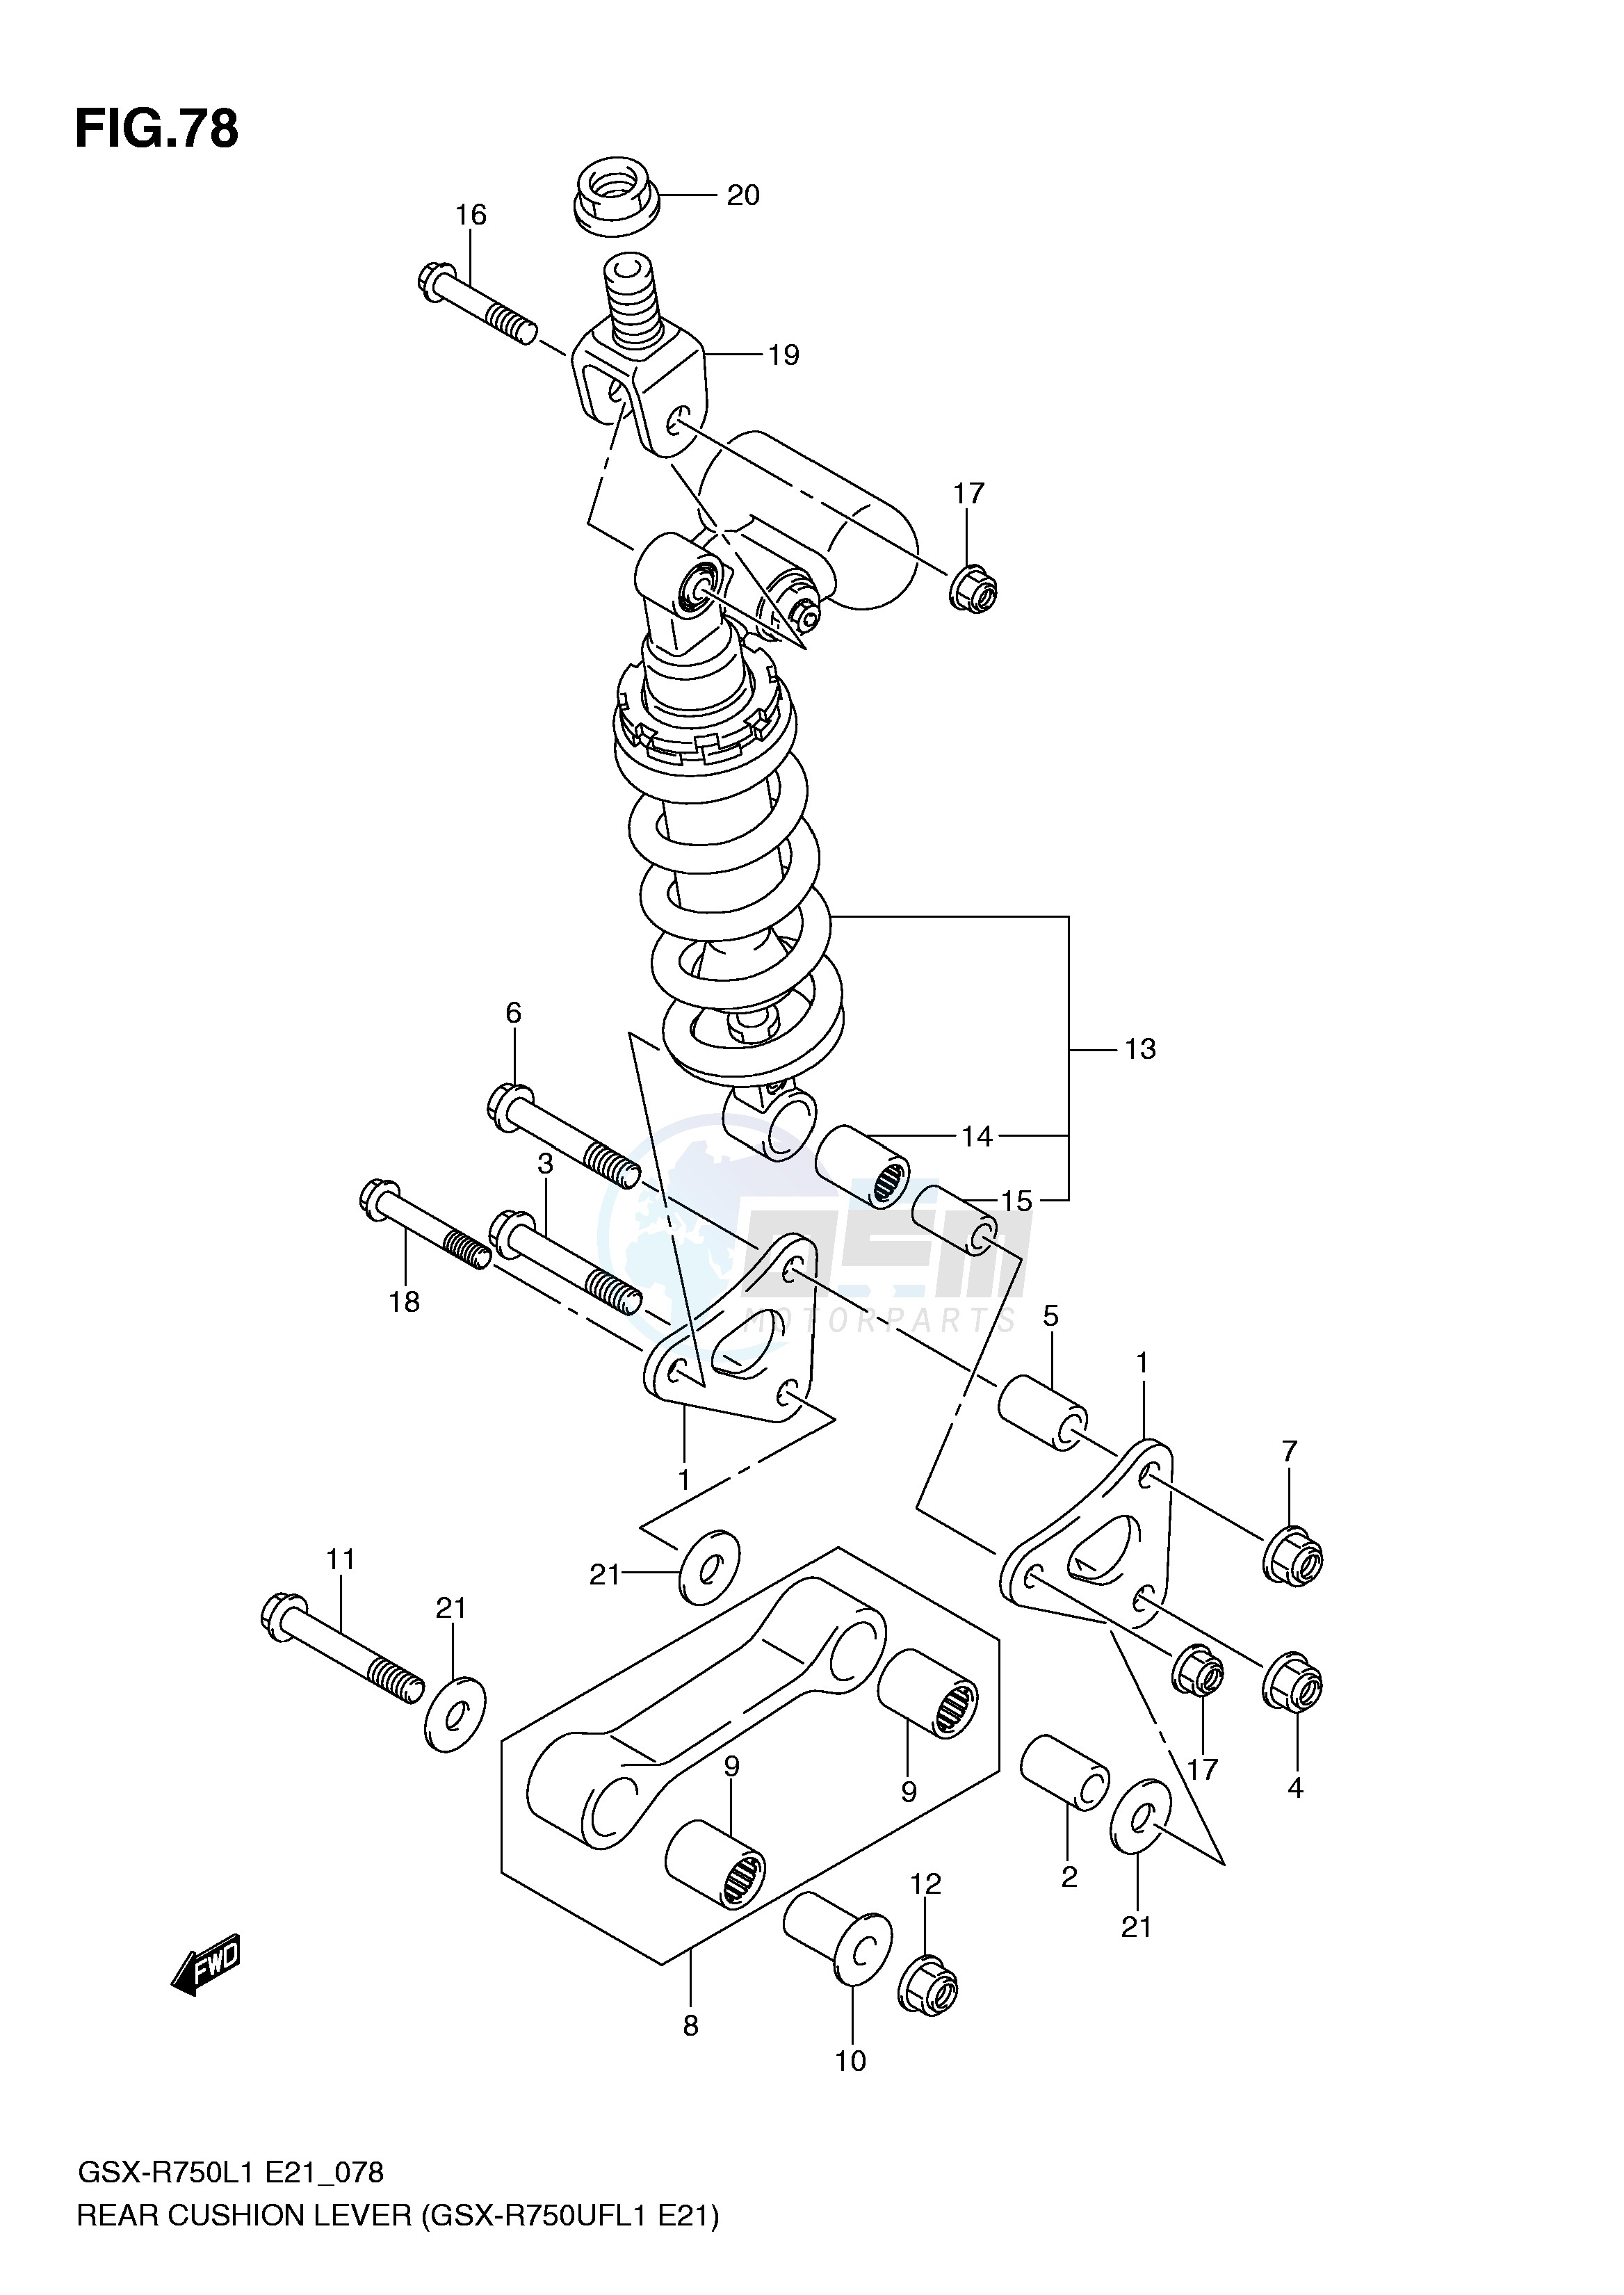 REAR CUSHION LEVER (GSX-R750UFL1 E21) blueprint